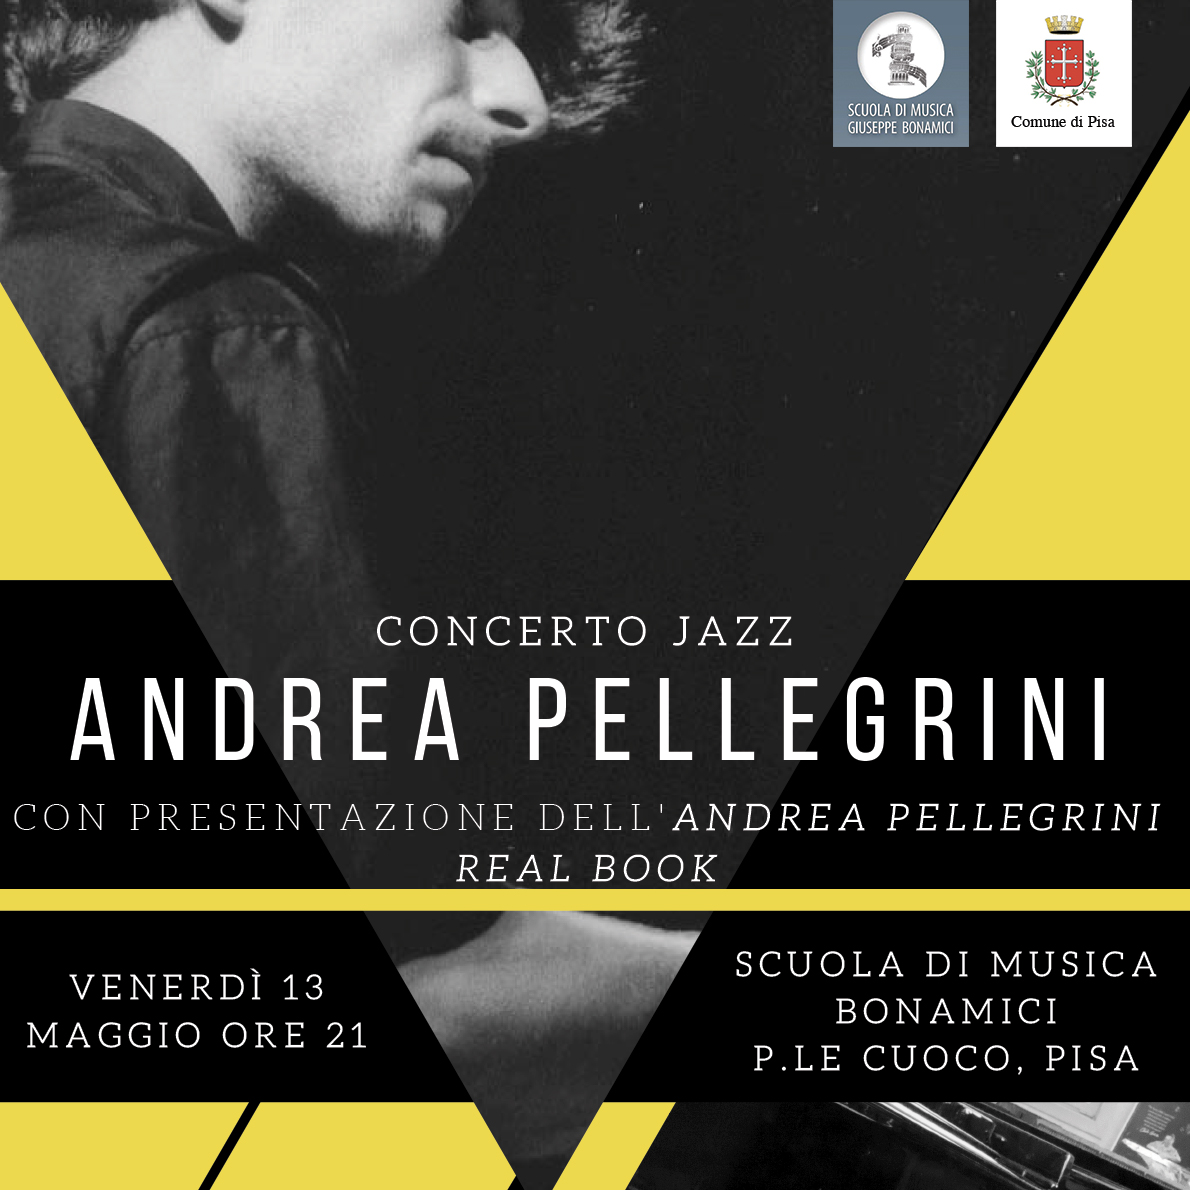 Concerto jazz di Andrea Pellegrini alla Scuola Bonamici